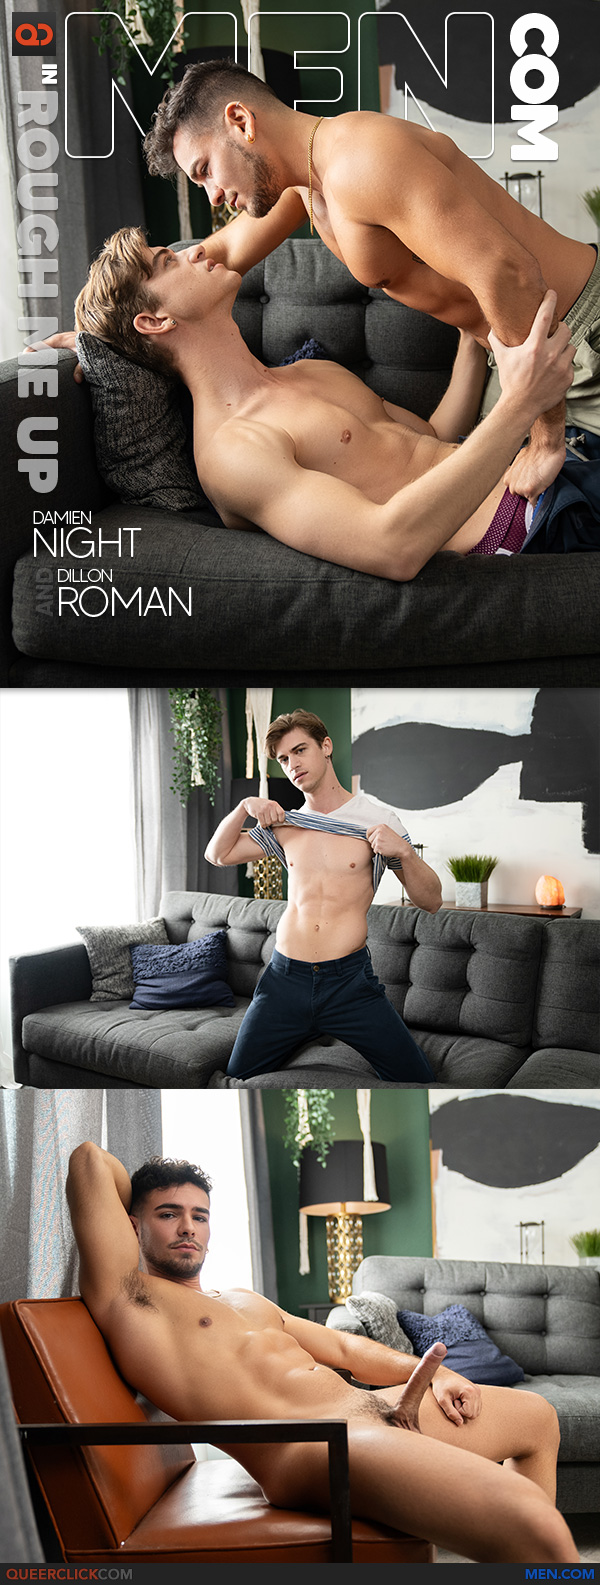 Men.com: Damian Night and Dillon Roman - Rough Me Up